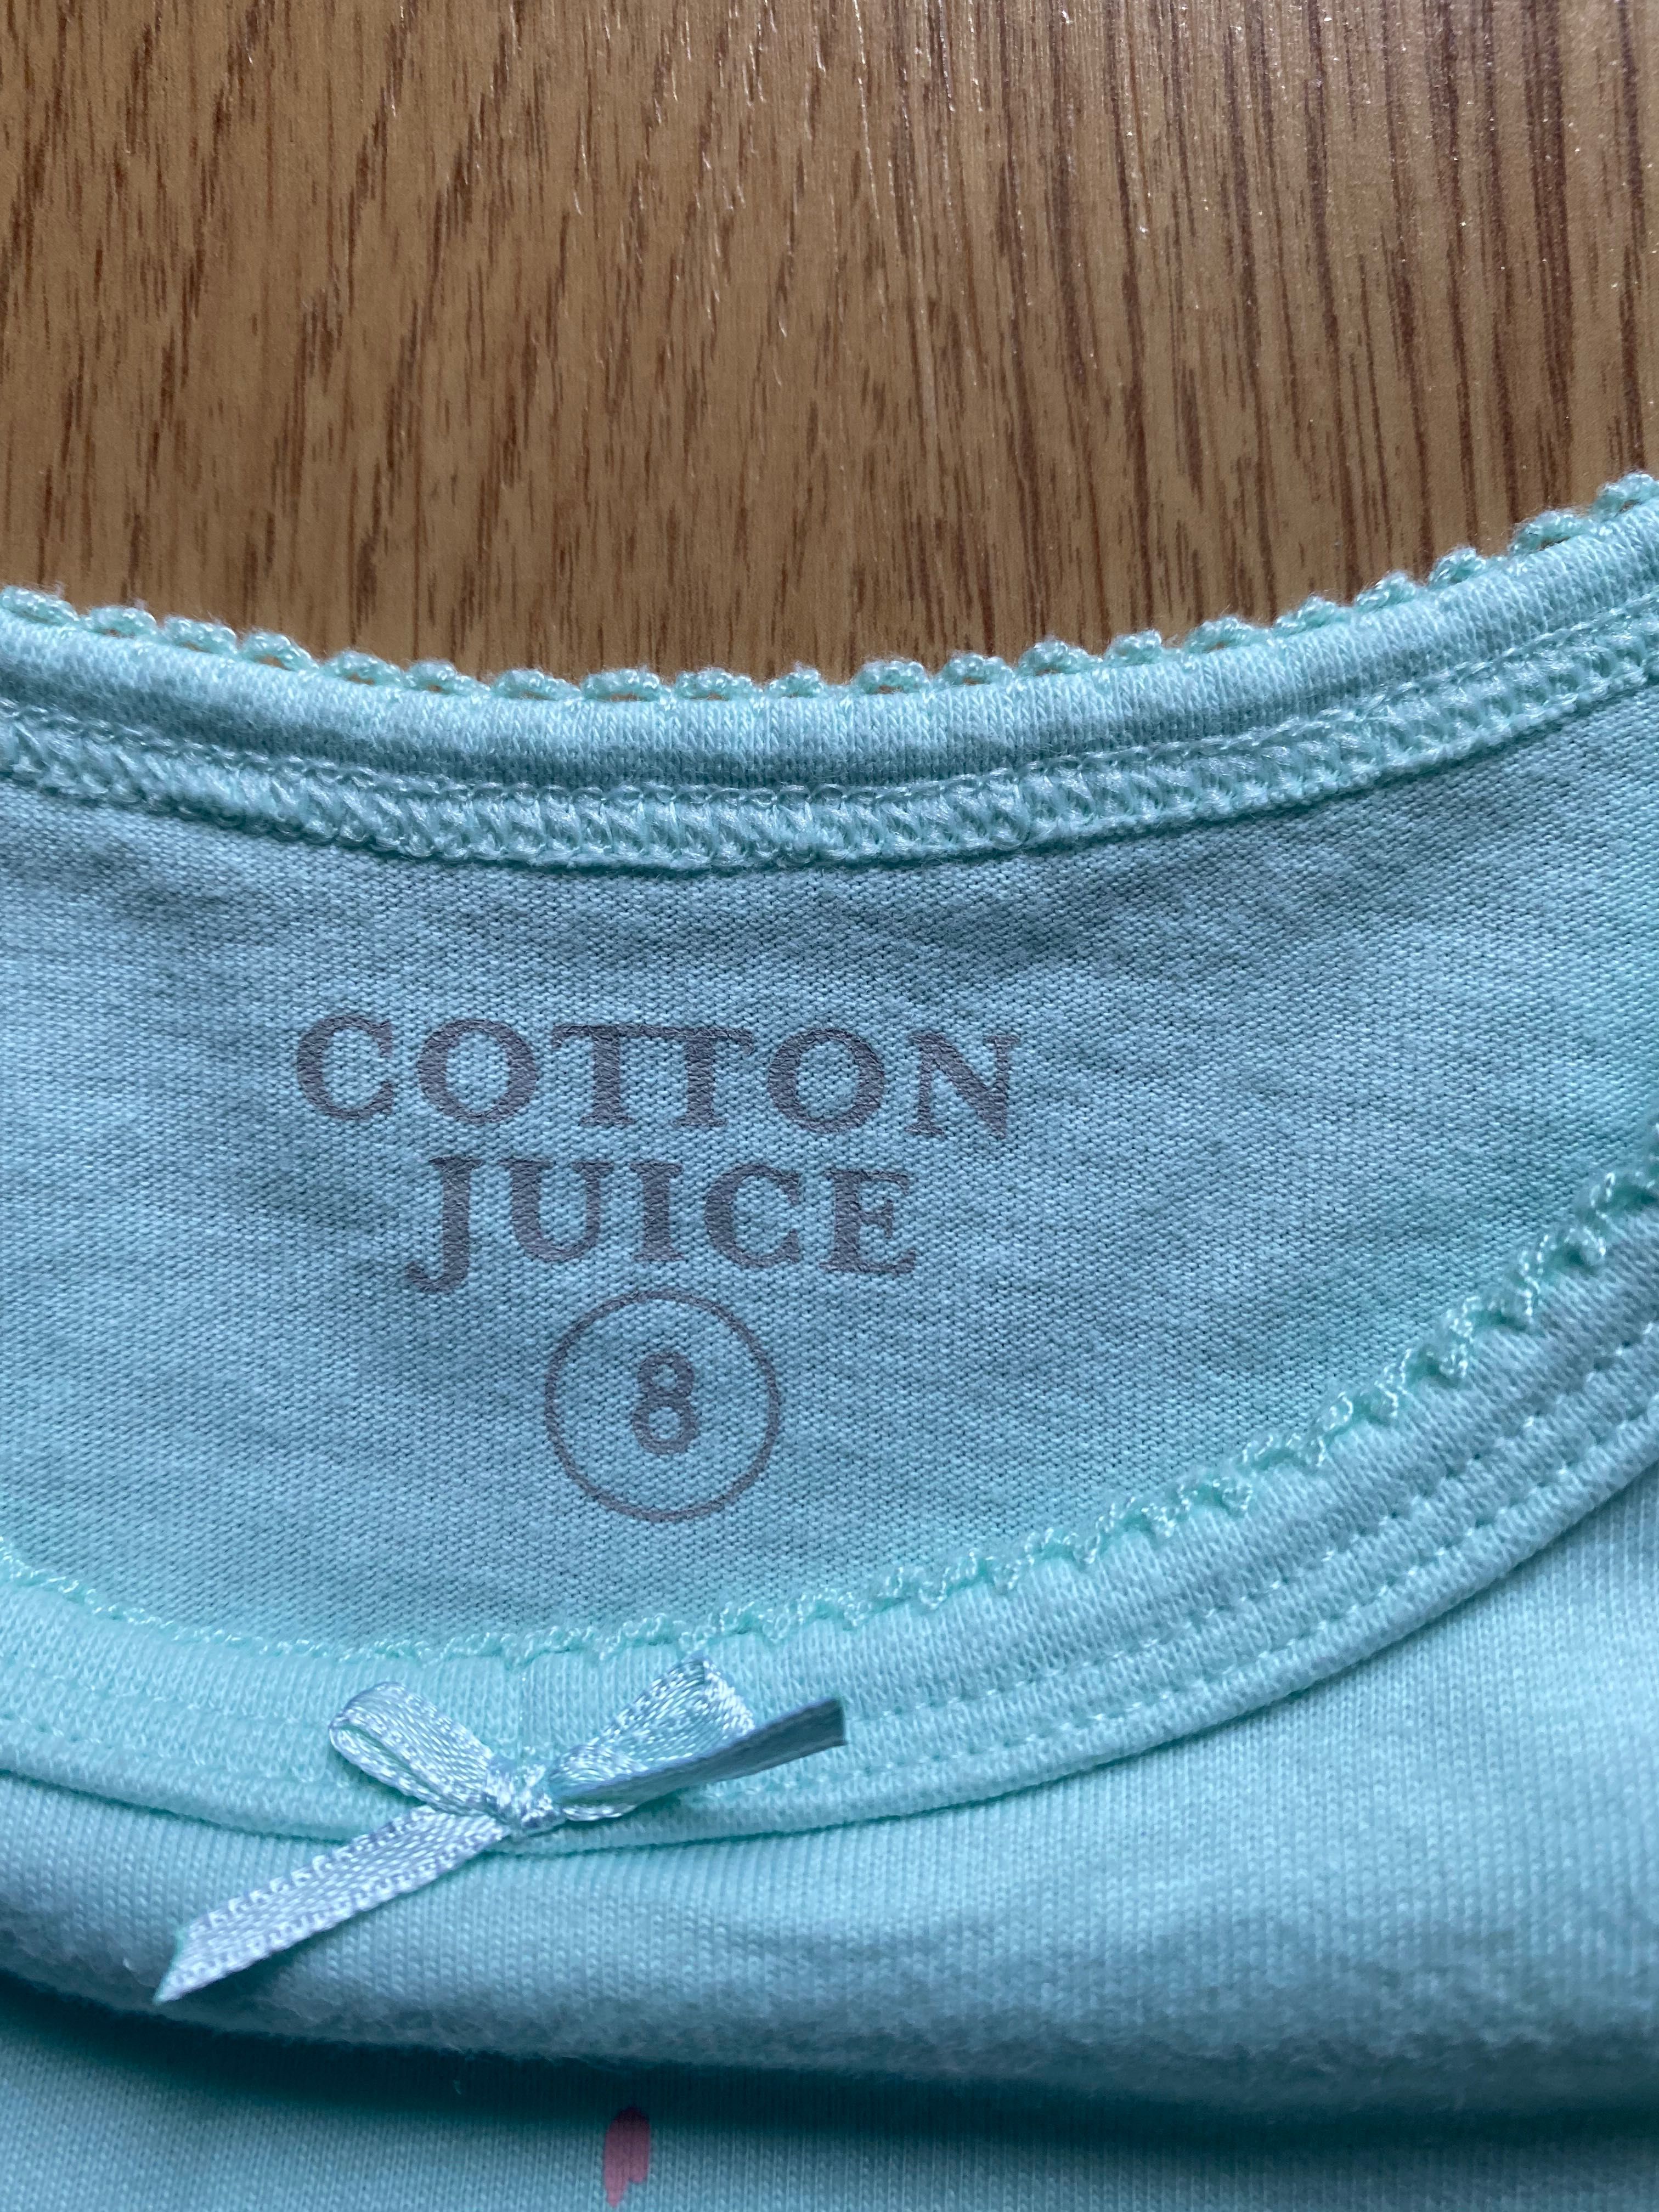 Pijama Cotton Juice 8 anos unicórnio